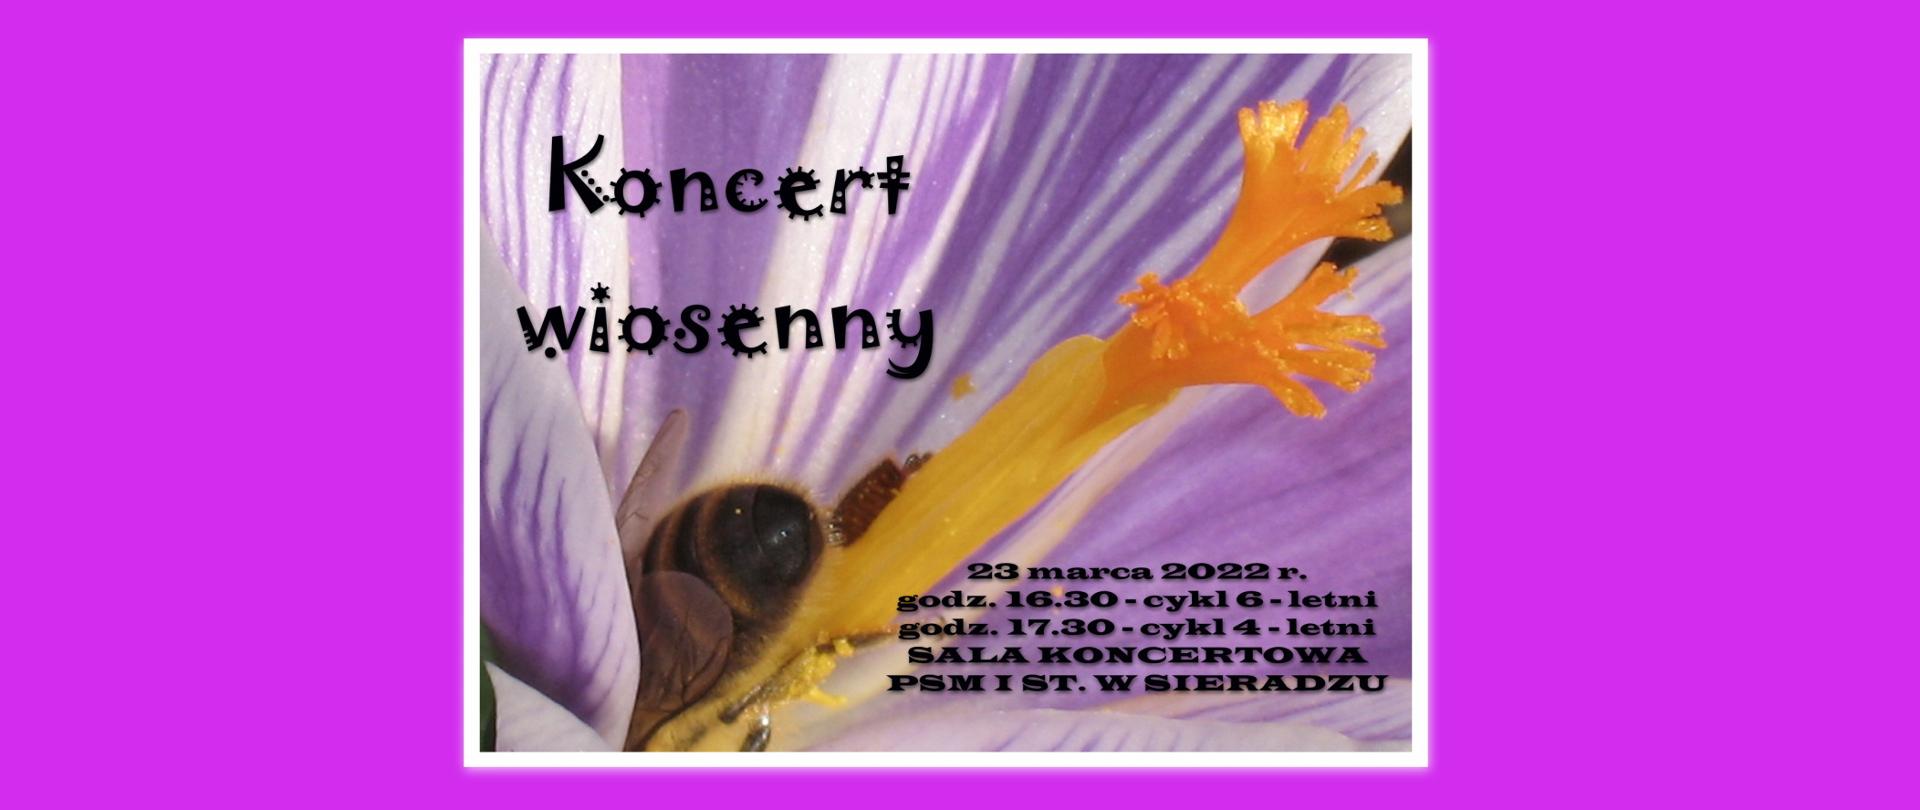 Pszczółka na pręciku kwiatka, napis koncert wiosenny 23 marca 2022 r. Sala koncertowa PSM I st. w Sieradzu